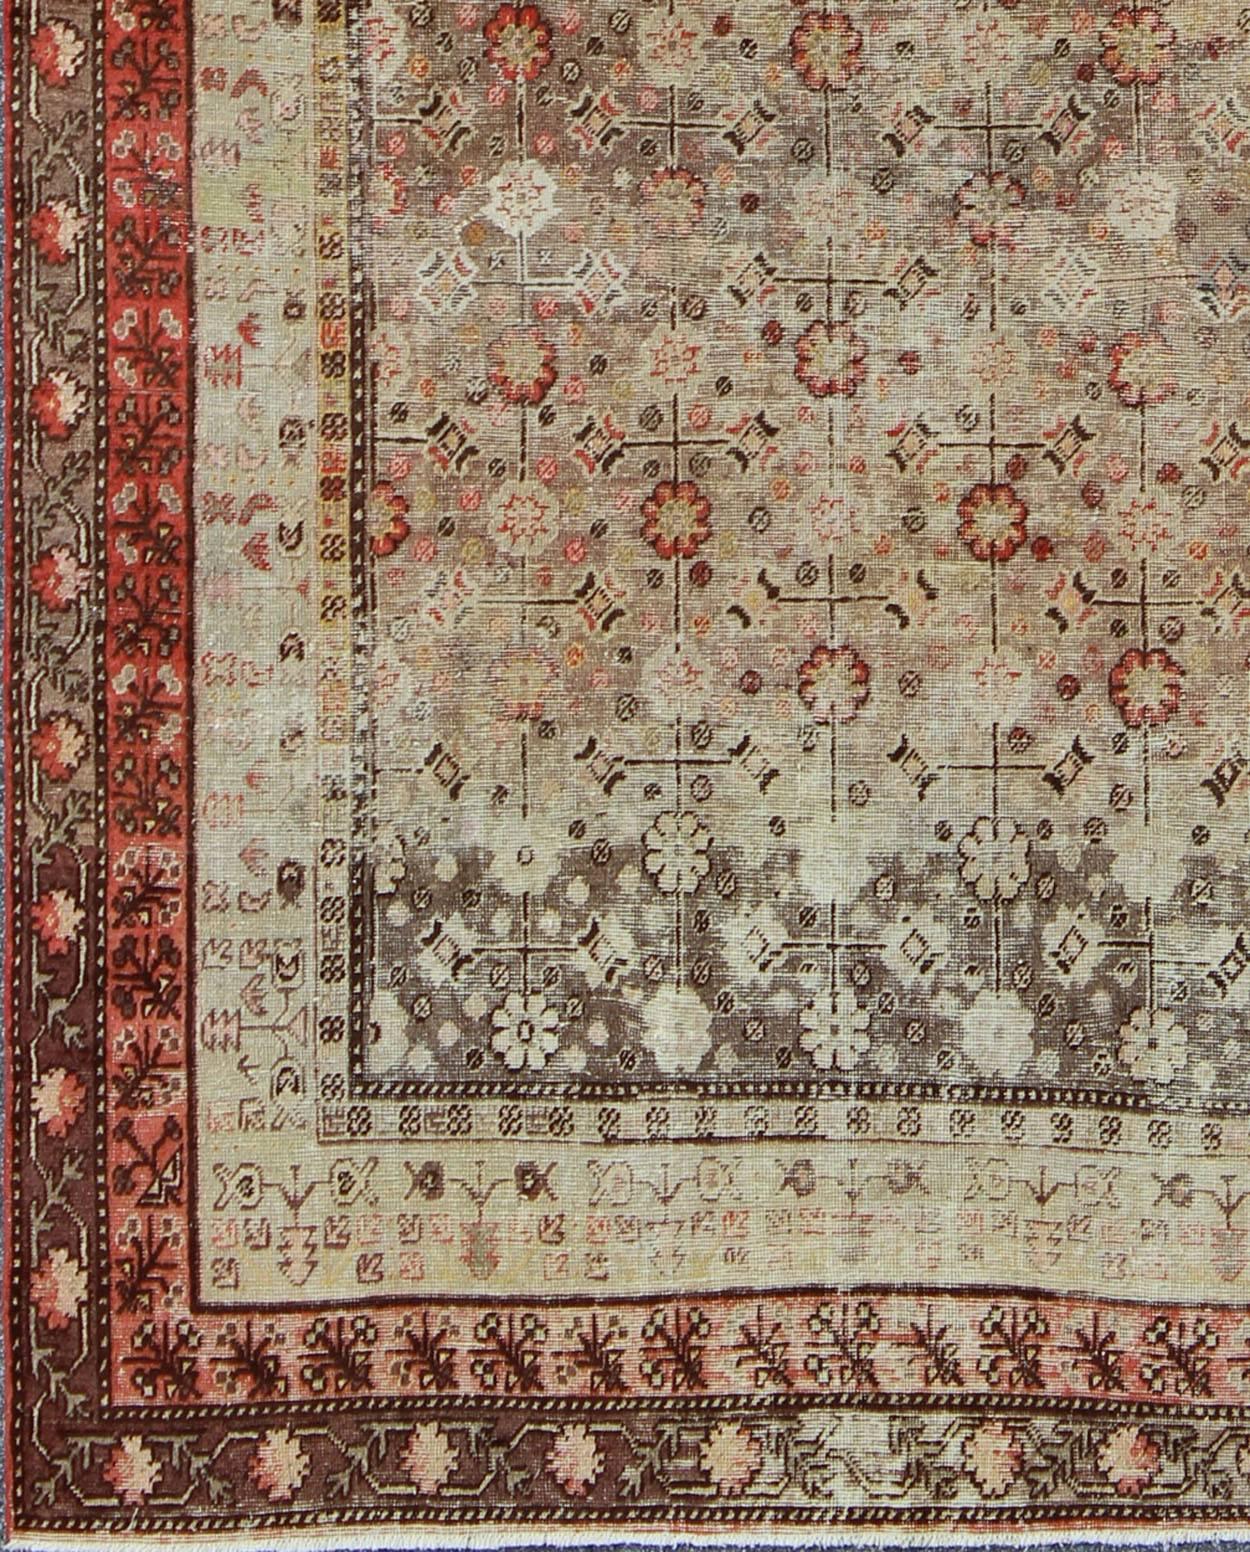 Mesures : 6'3'' x 11'5''.
Ce tapis Khotan d'Asie centrale est une antiquité du début du XXe siècle. Cette pièce présente un motif traditionnel de fleurs sur un fond anthracite et beige, entouré de multiples bordures florales complémentaires de